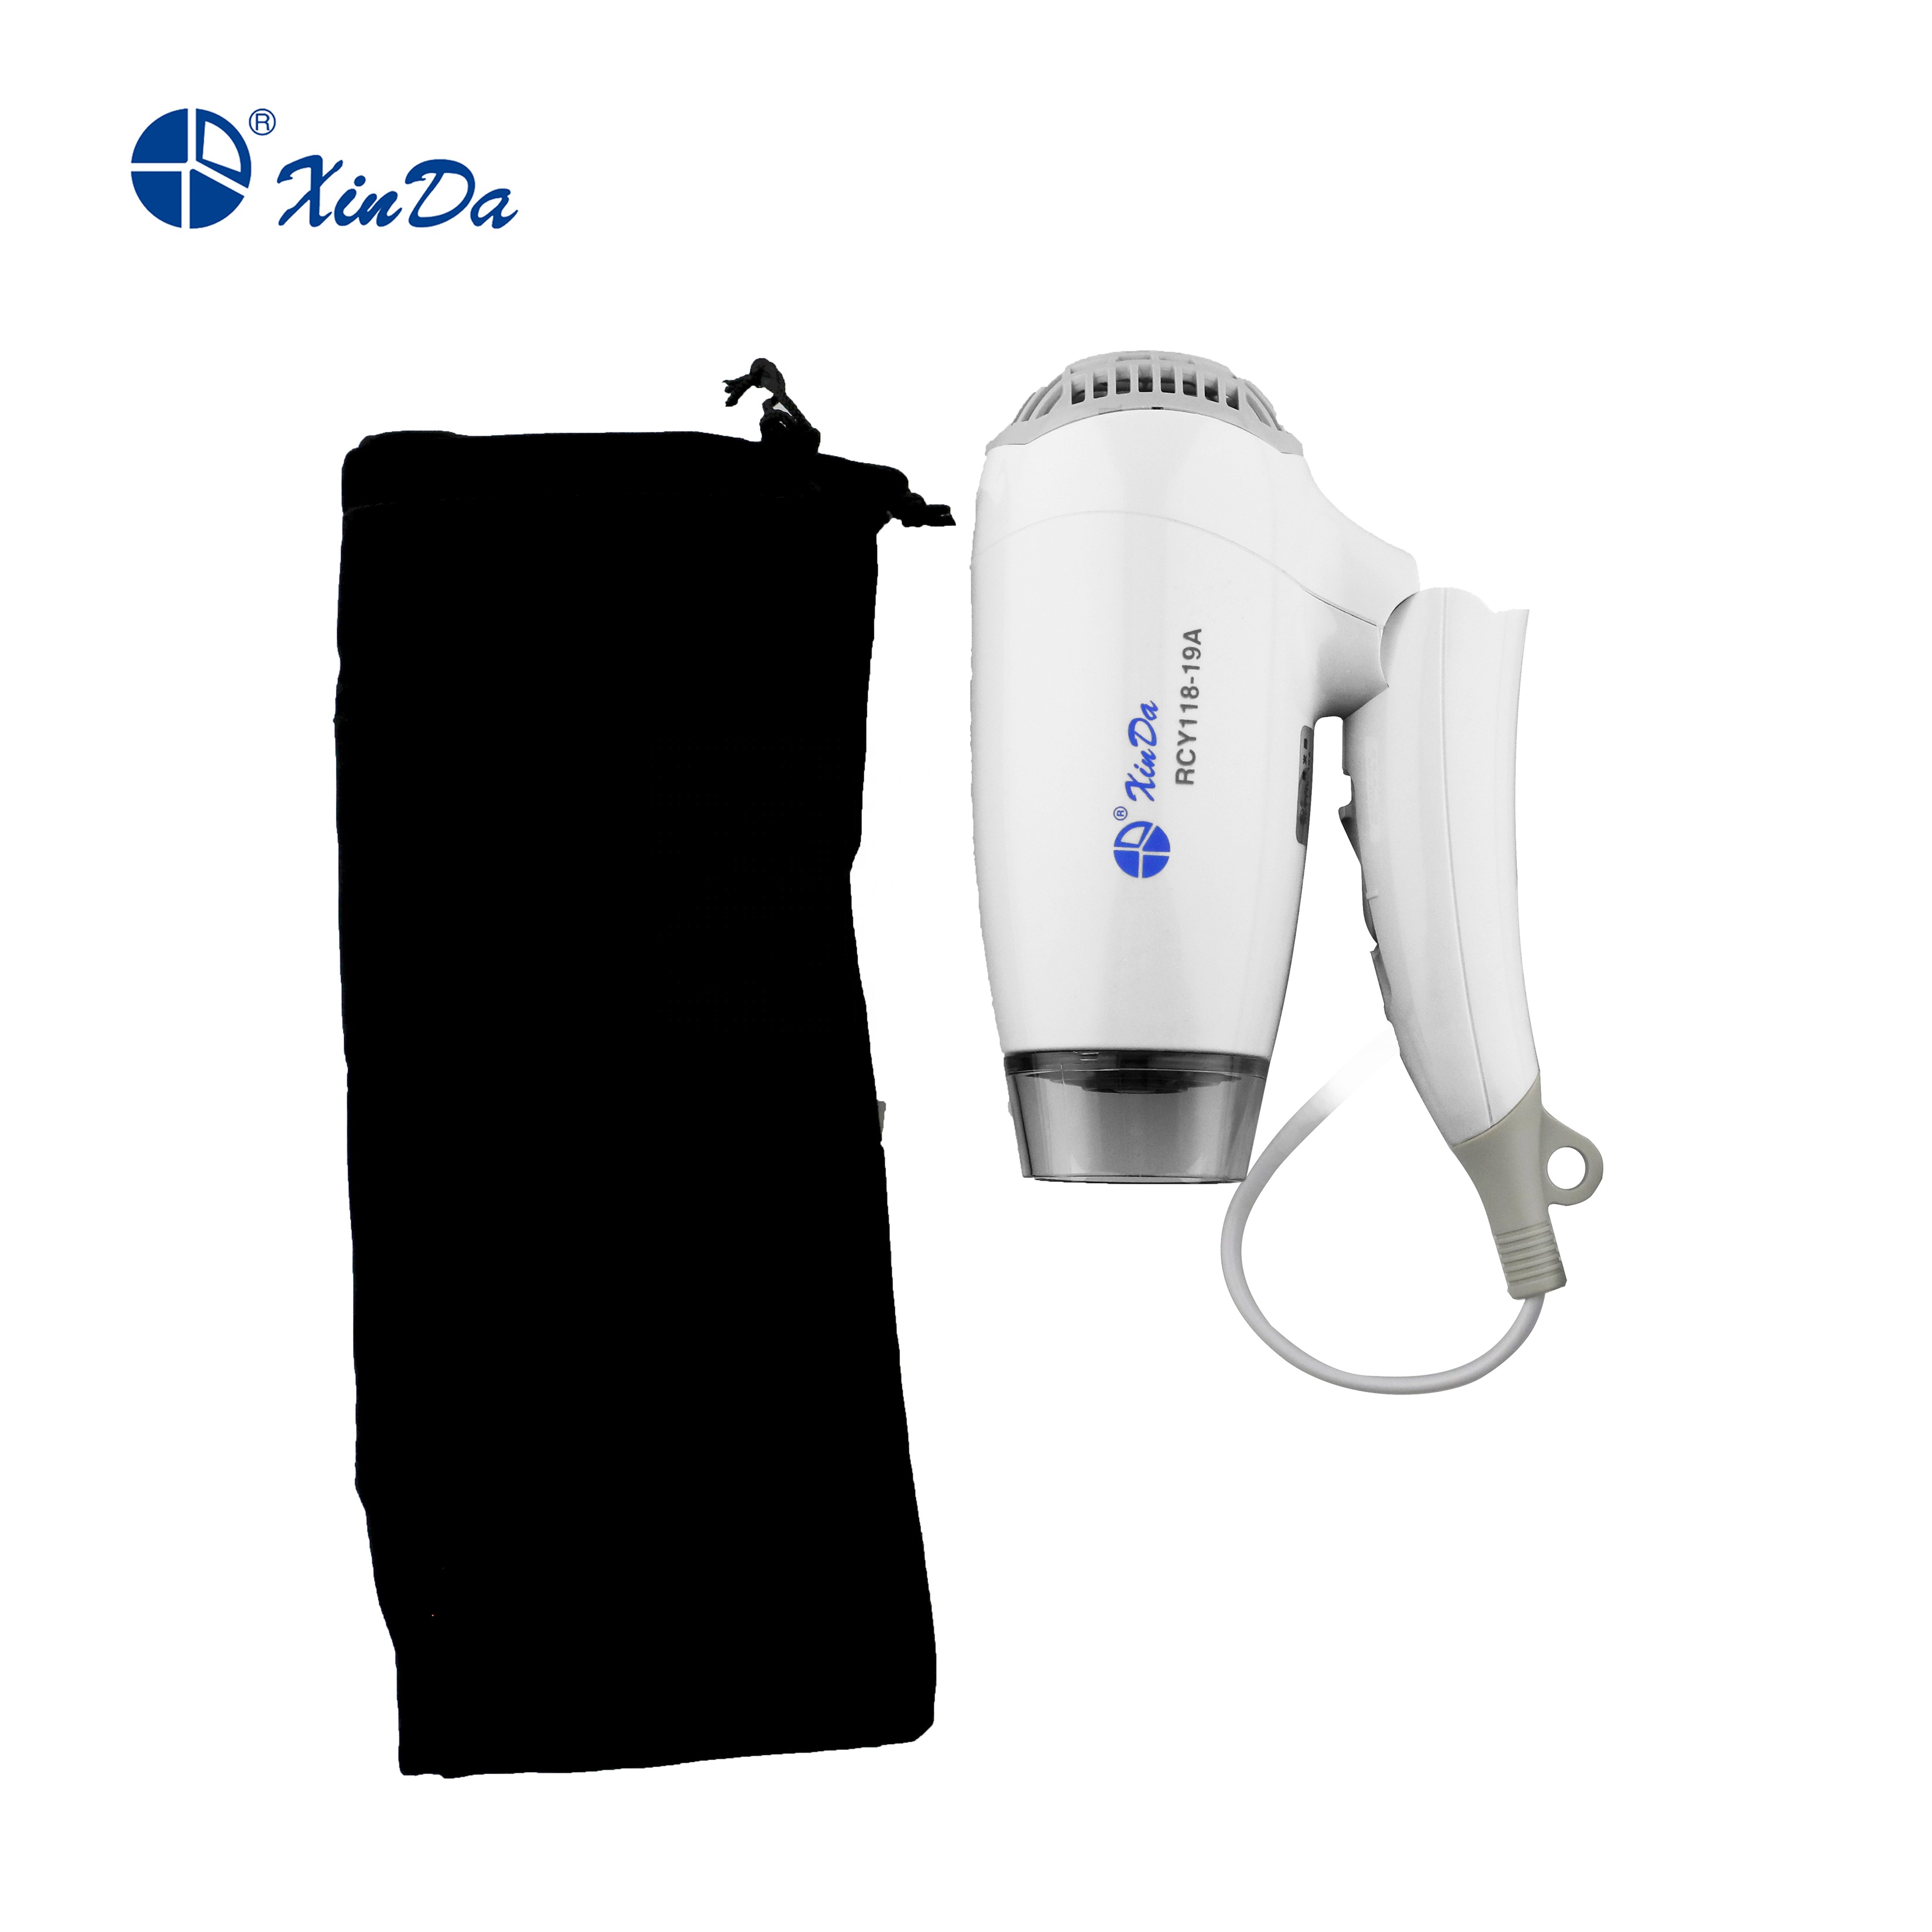 Secador de pelo blanco ABS plegable para viajes personales y familiares XINDA RCY-118 19A